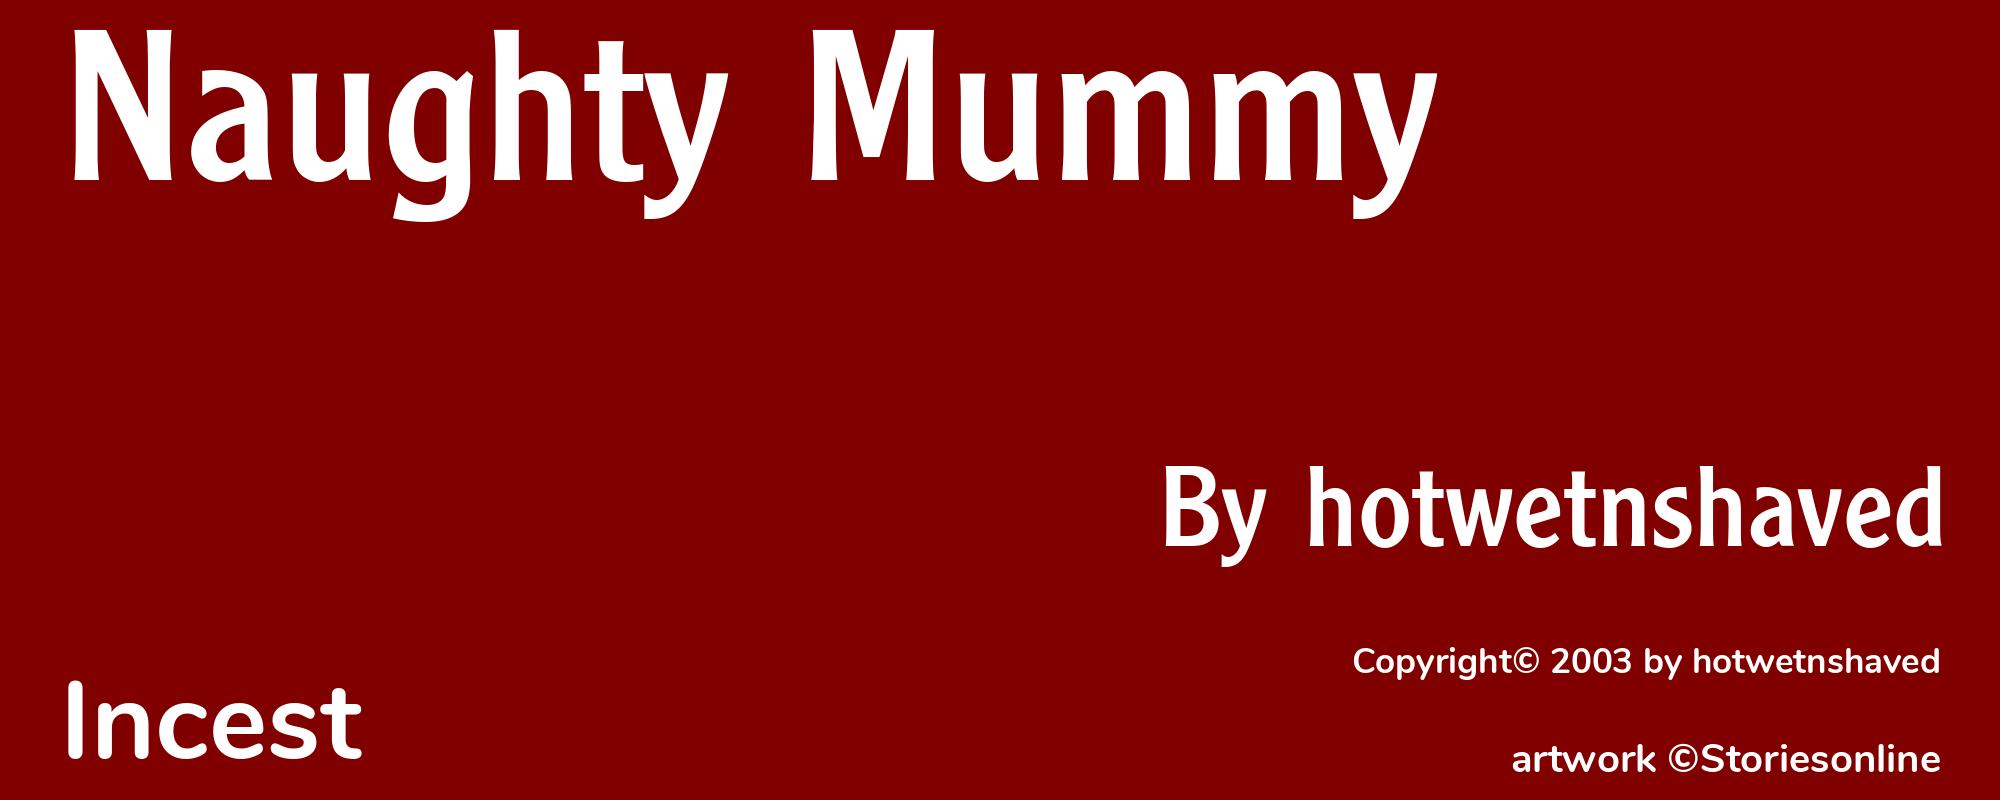 Naughty Mummy - Cover